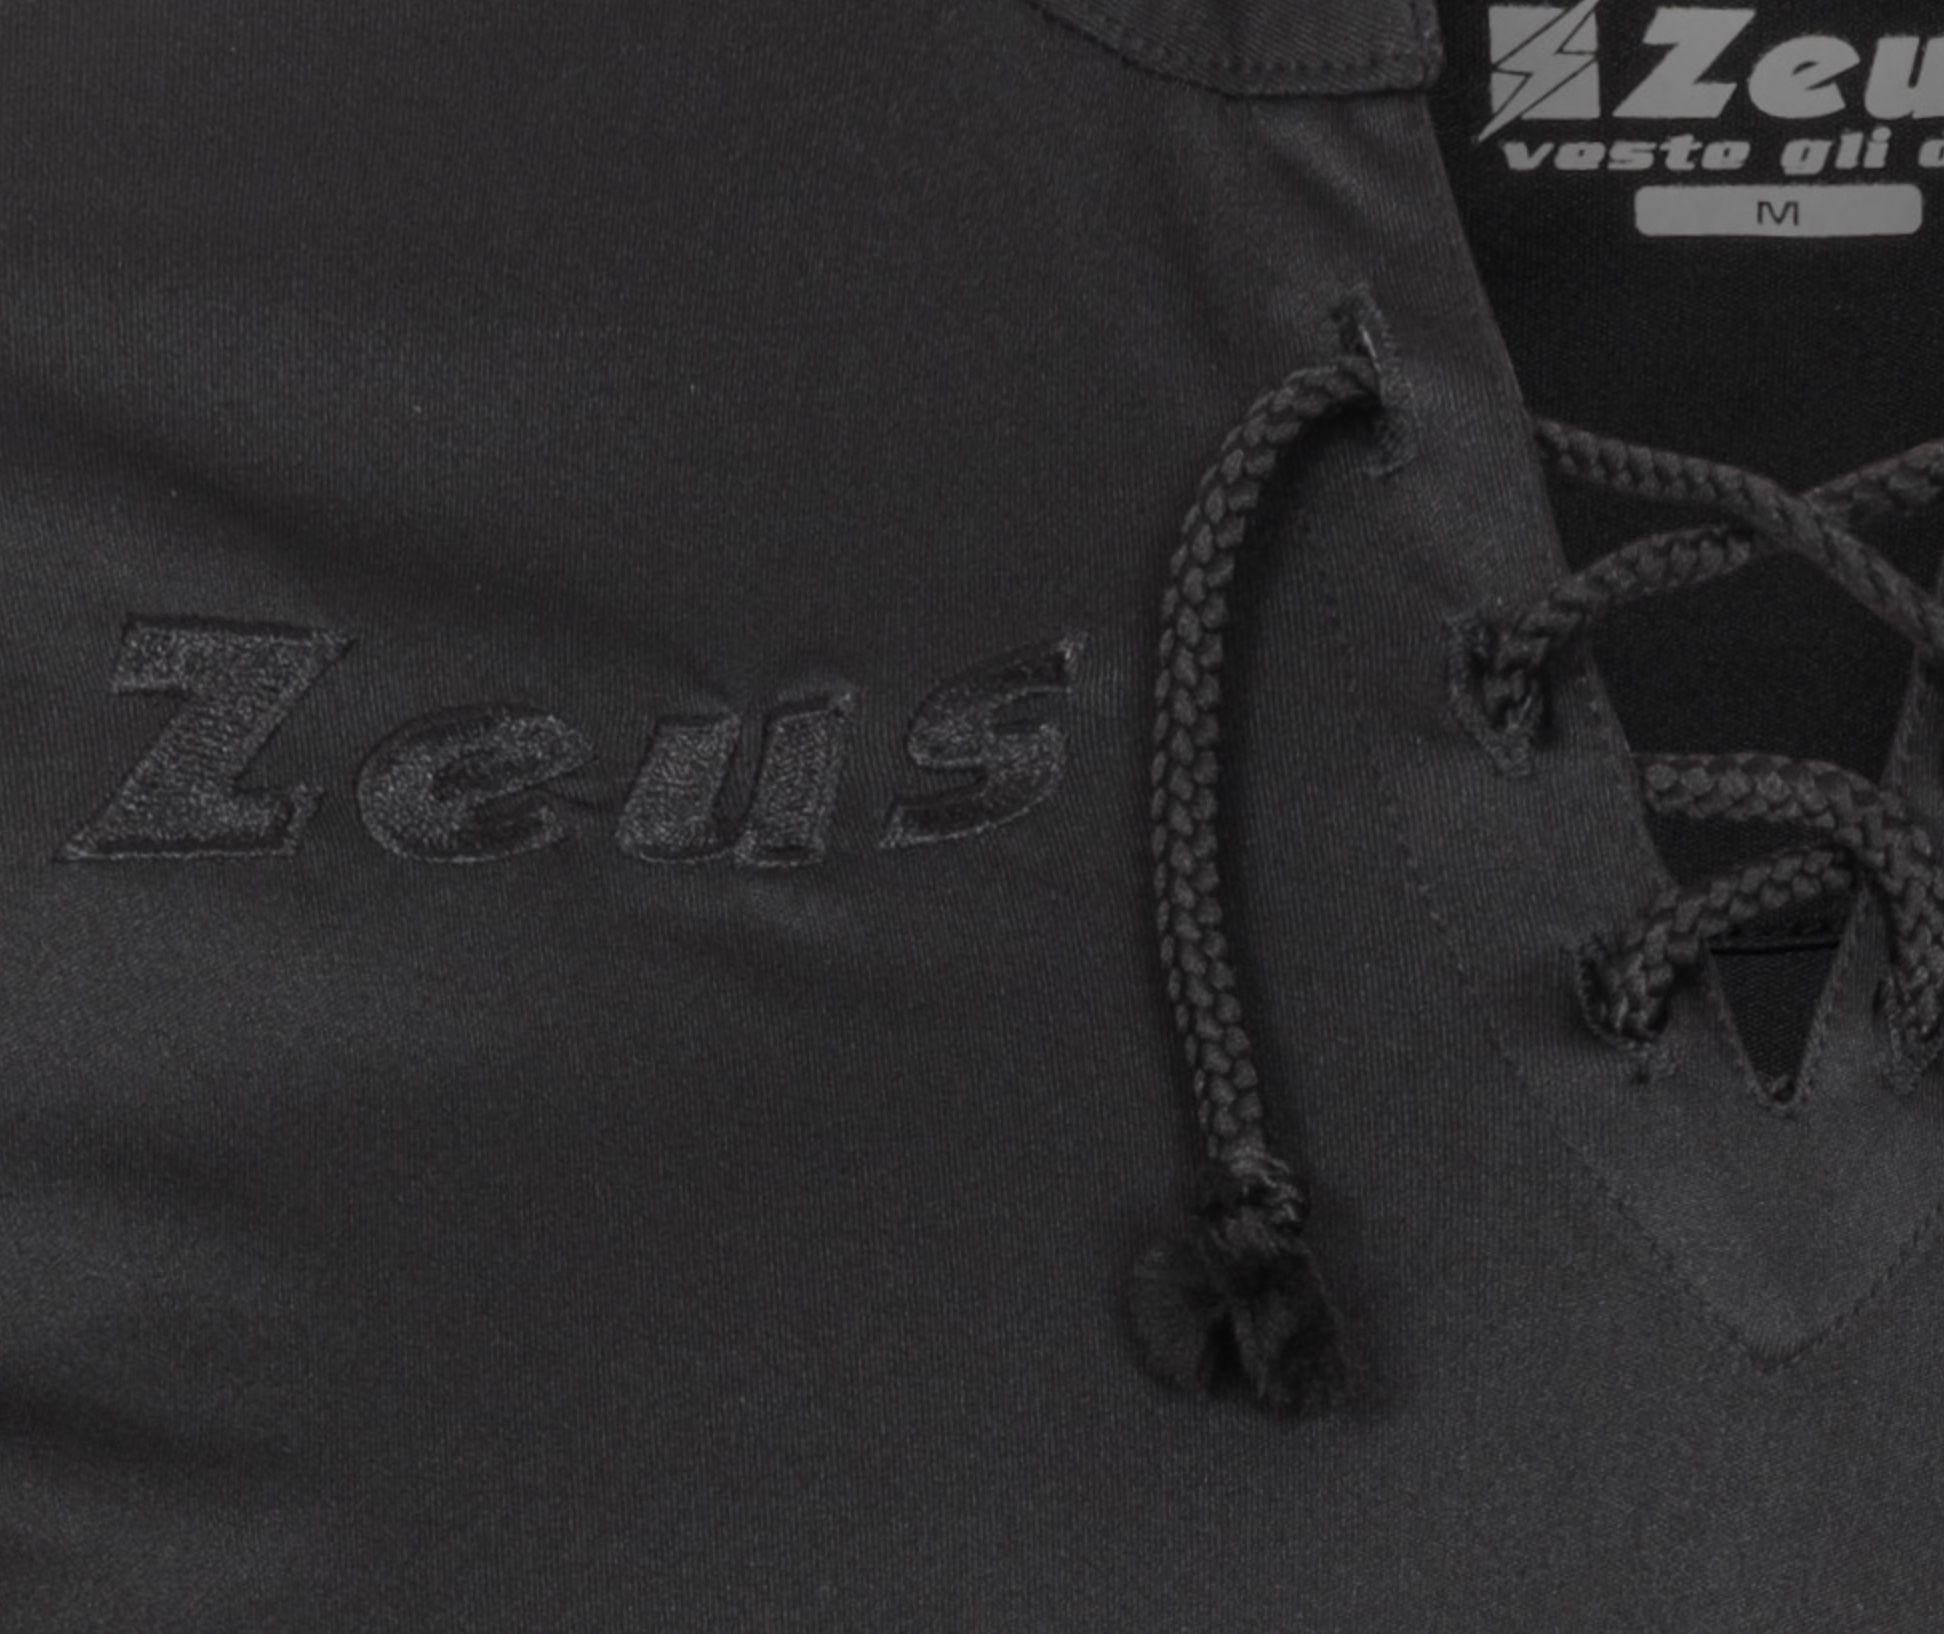 Zeus x Sportspar Legend Fußball Set Trikot mit Shorts in Schwarz für 9,50€ (statt 20€)